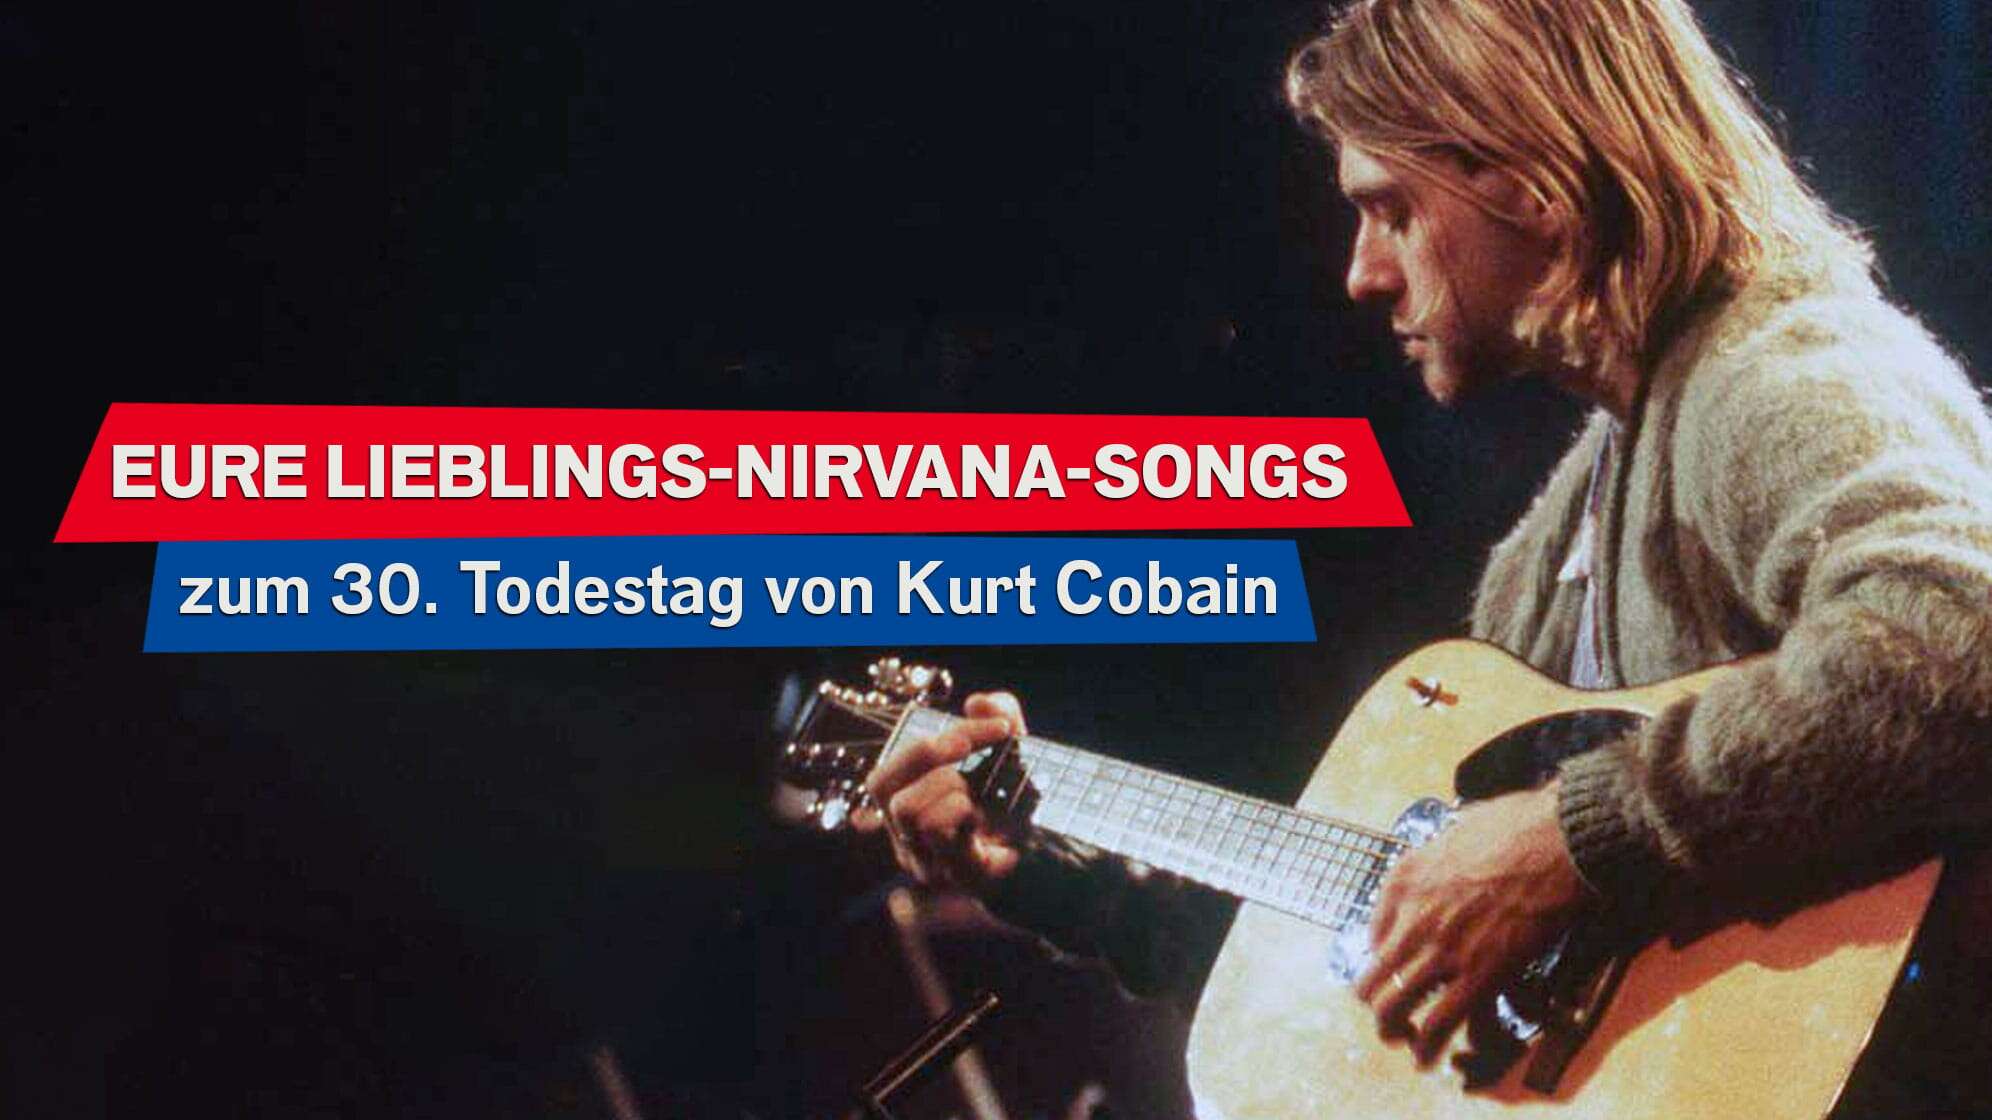 Foto von Kurt Cobain bei der Aufzeichnung des Nirvana MTV Unplugged Konzerts, dazu der Text: Eure Lieblings-Nirvana-Songs zum 30. Todestag von Kurt Cobain